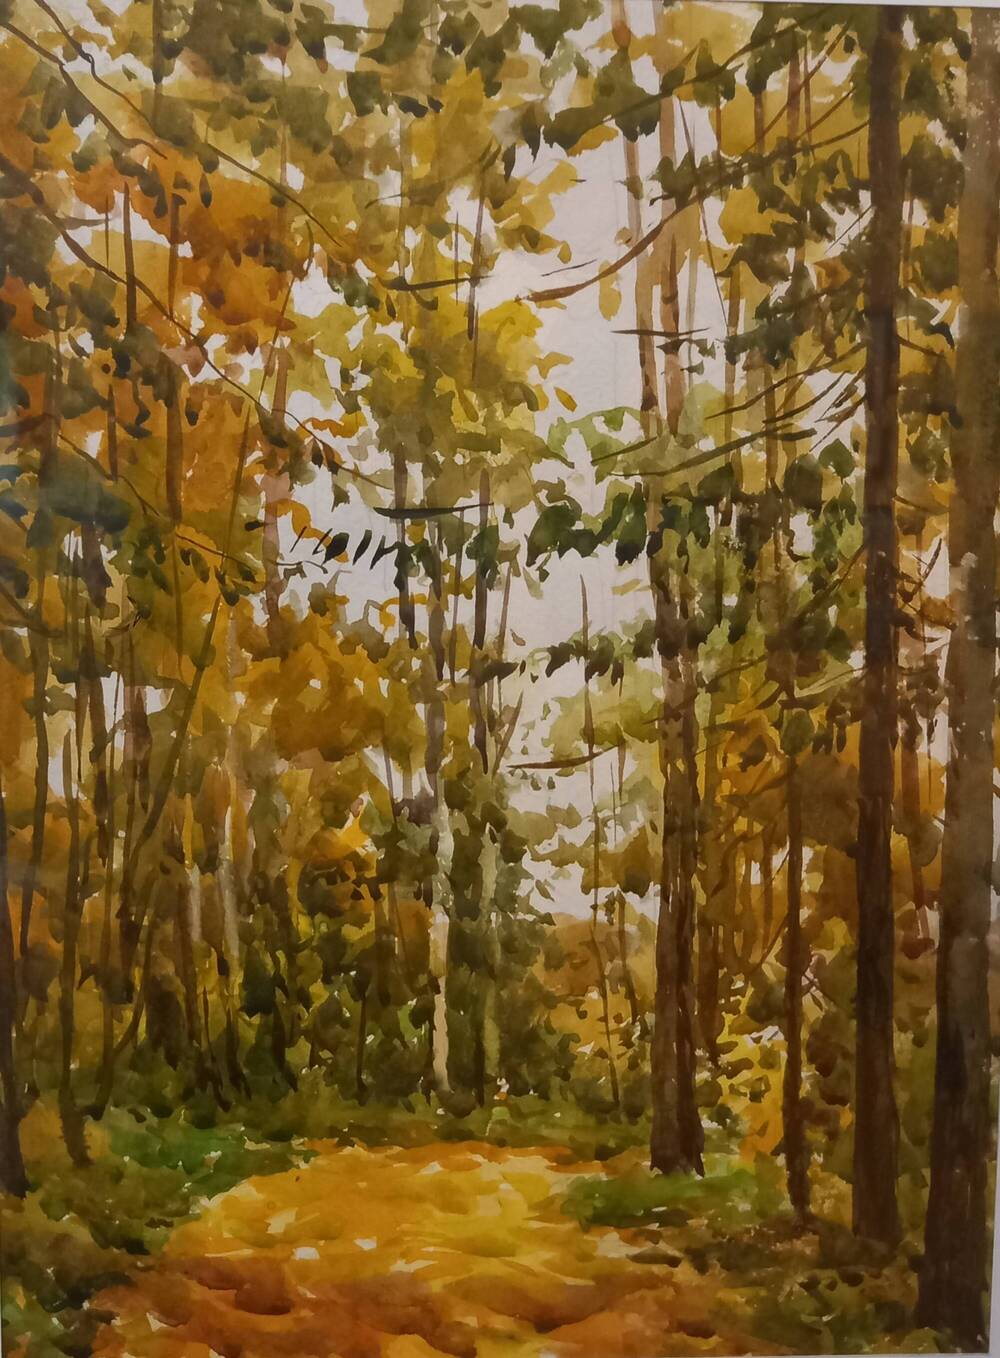 Лебедев Юрий Николаевич (1961-2020)
Картина «Осенних красок хоровод